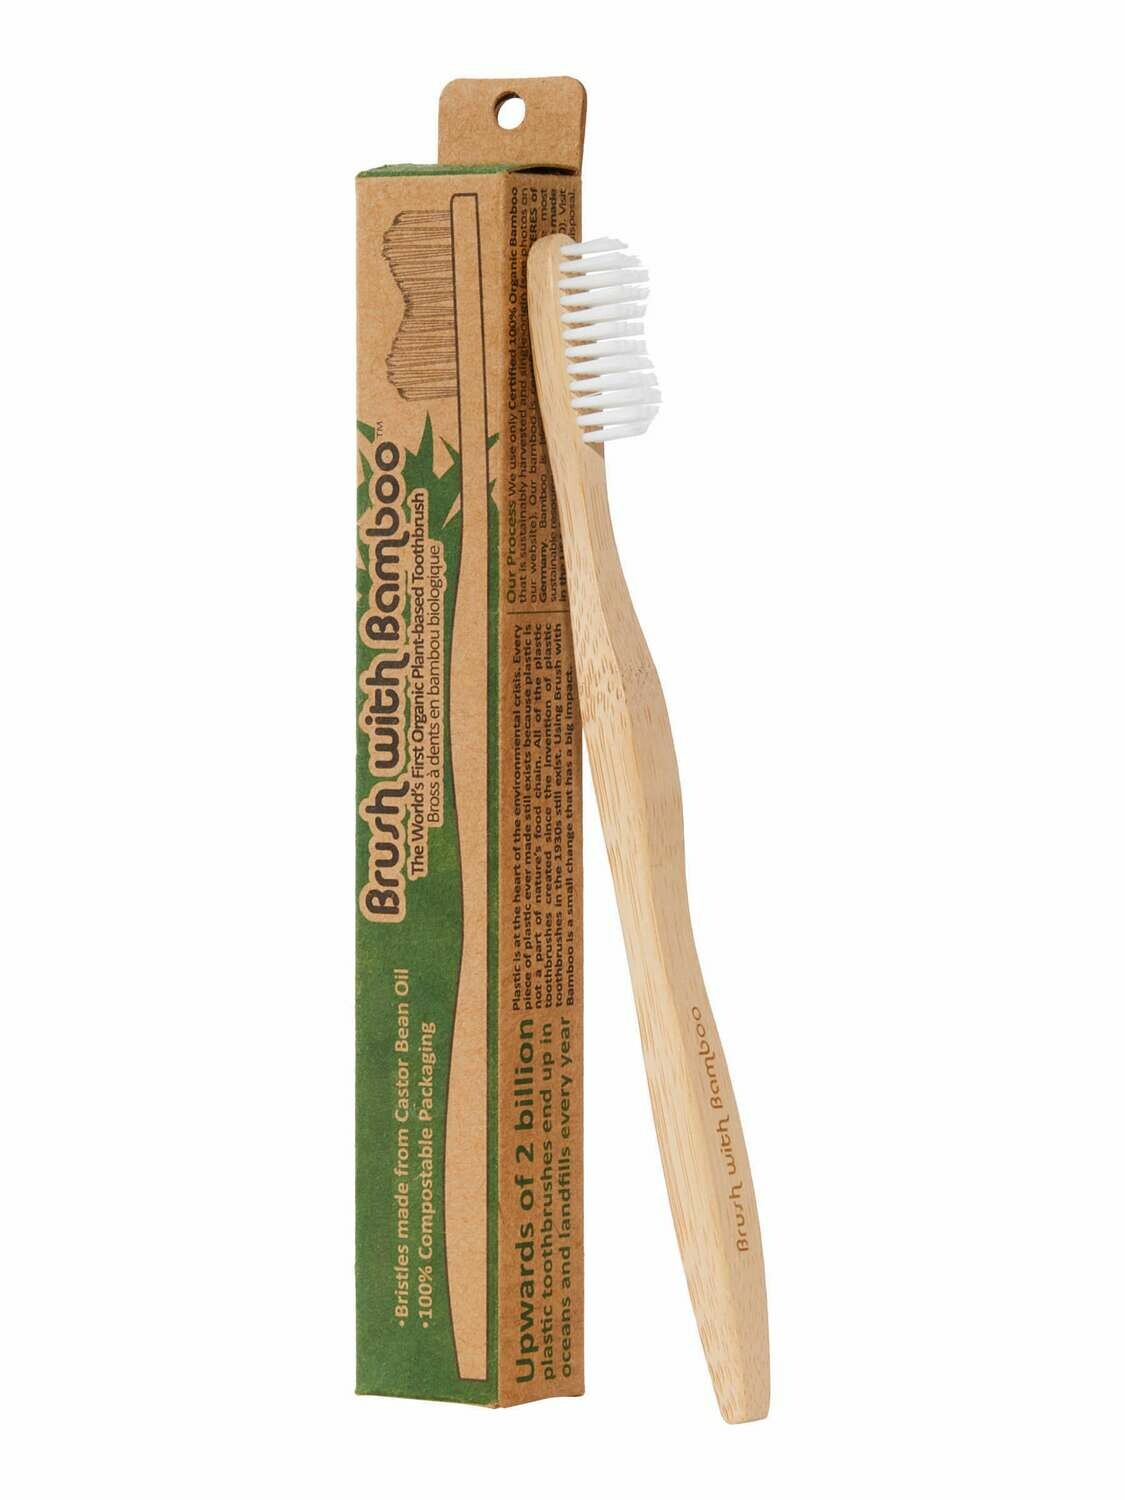 Toothbrush - Adult Brush w/Bamboo